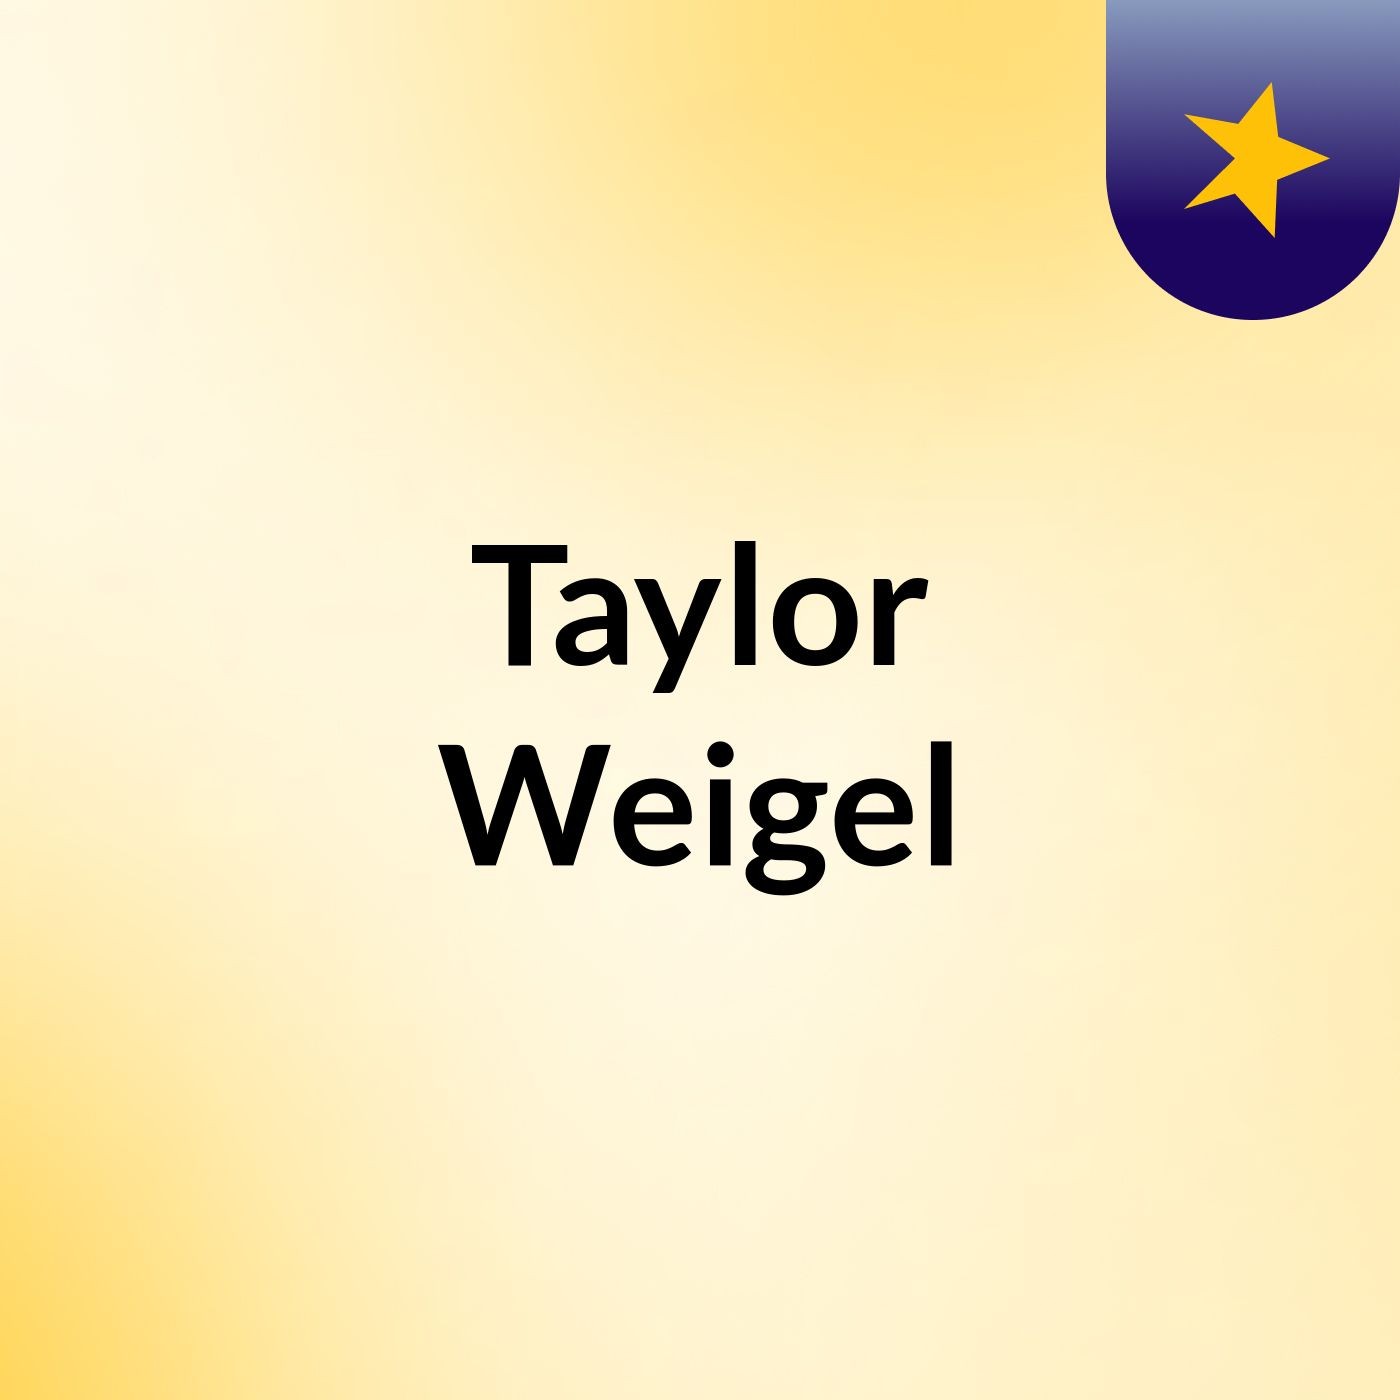 Taylor Weigel